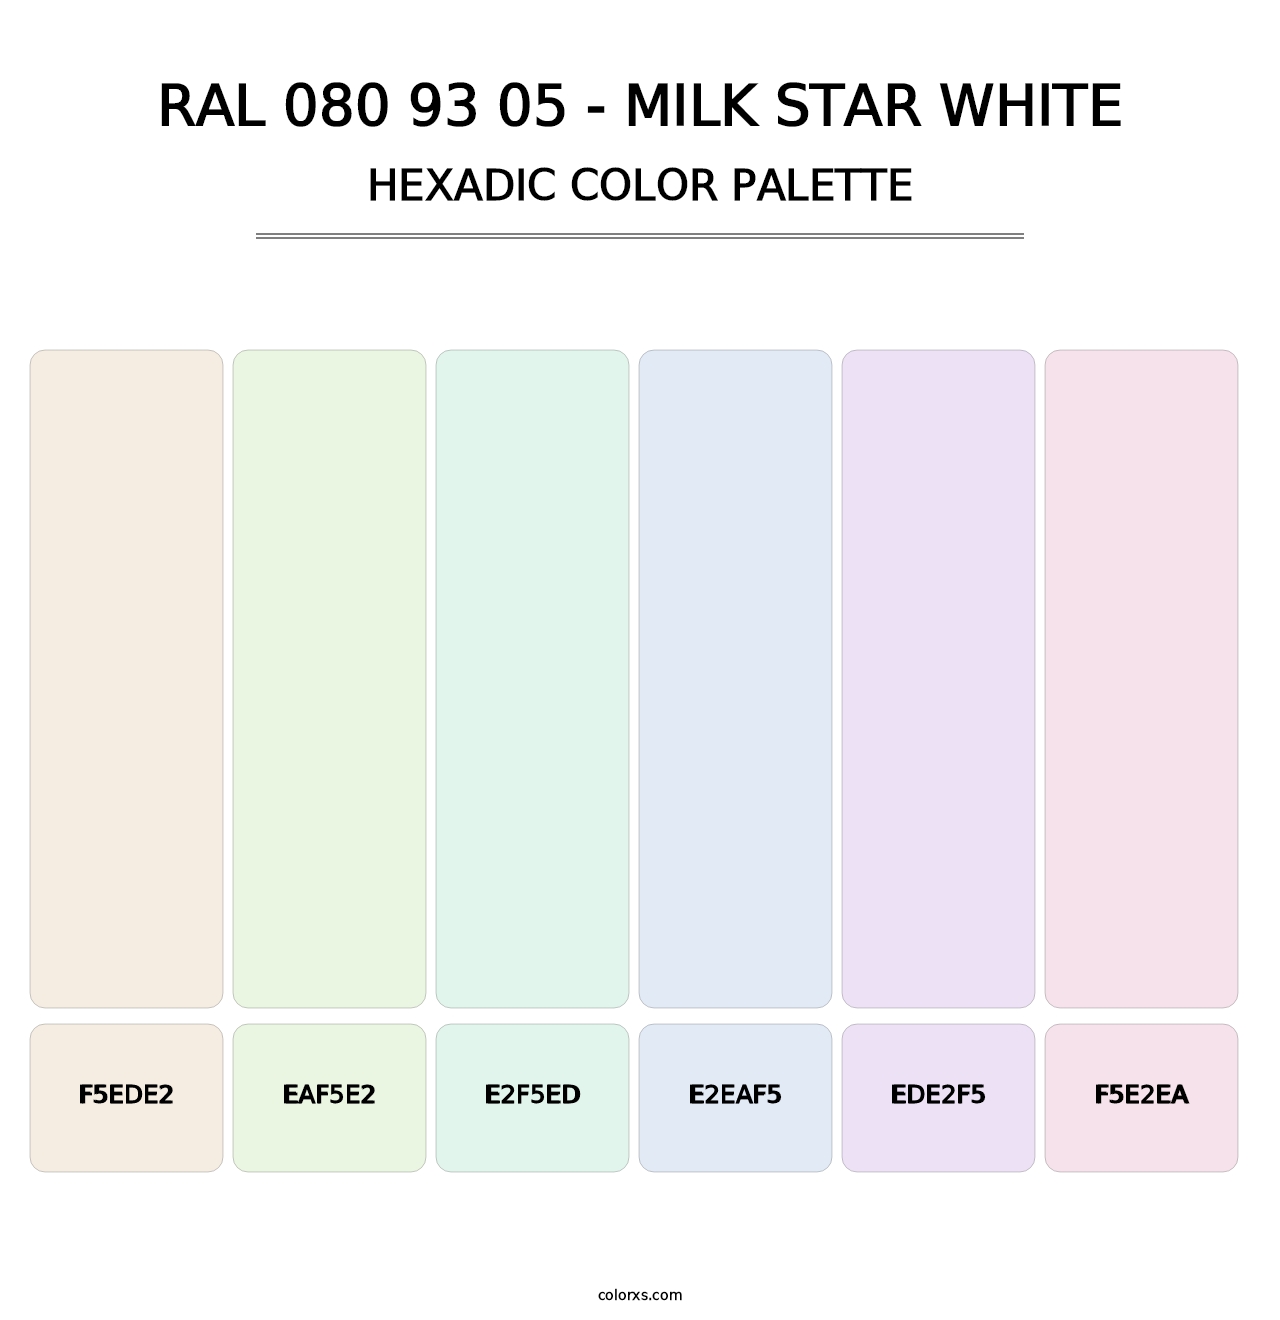 RAL 080 93 05 - Milk Star White - Hexadic Color Palette